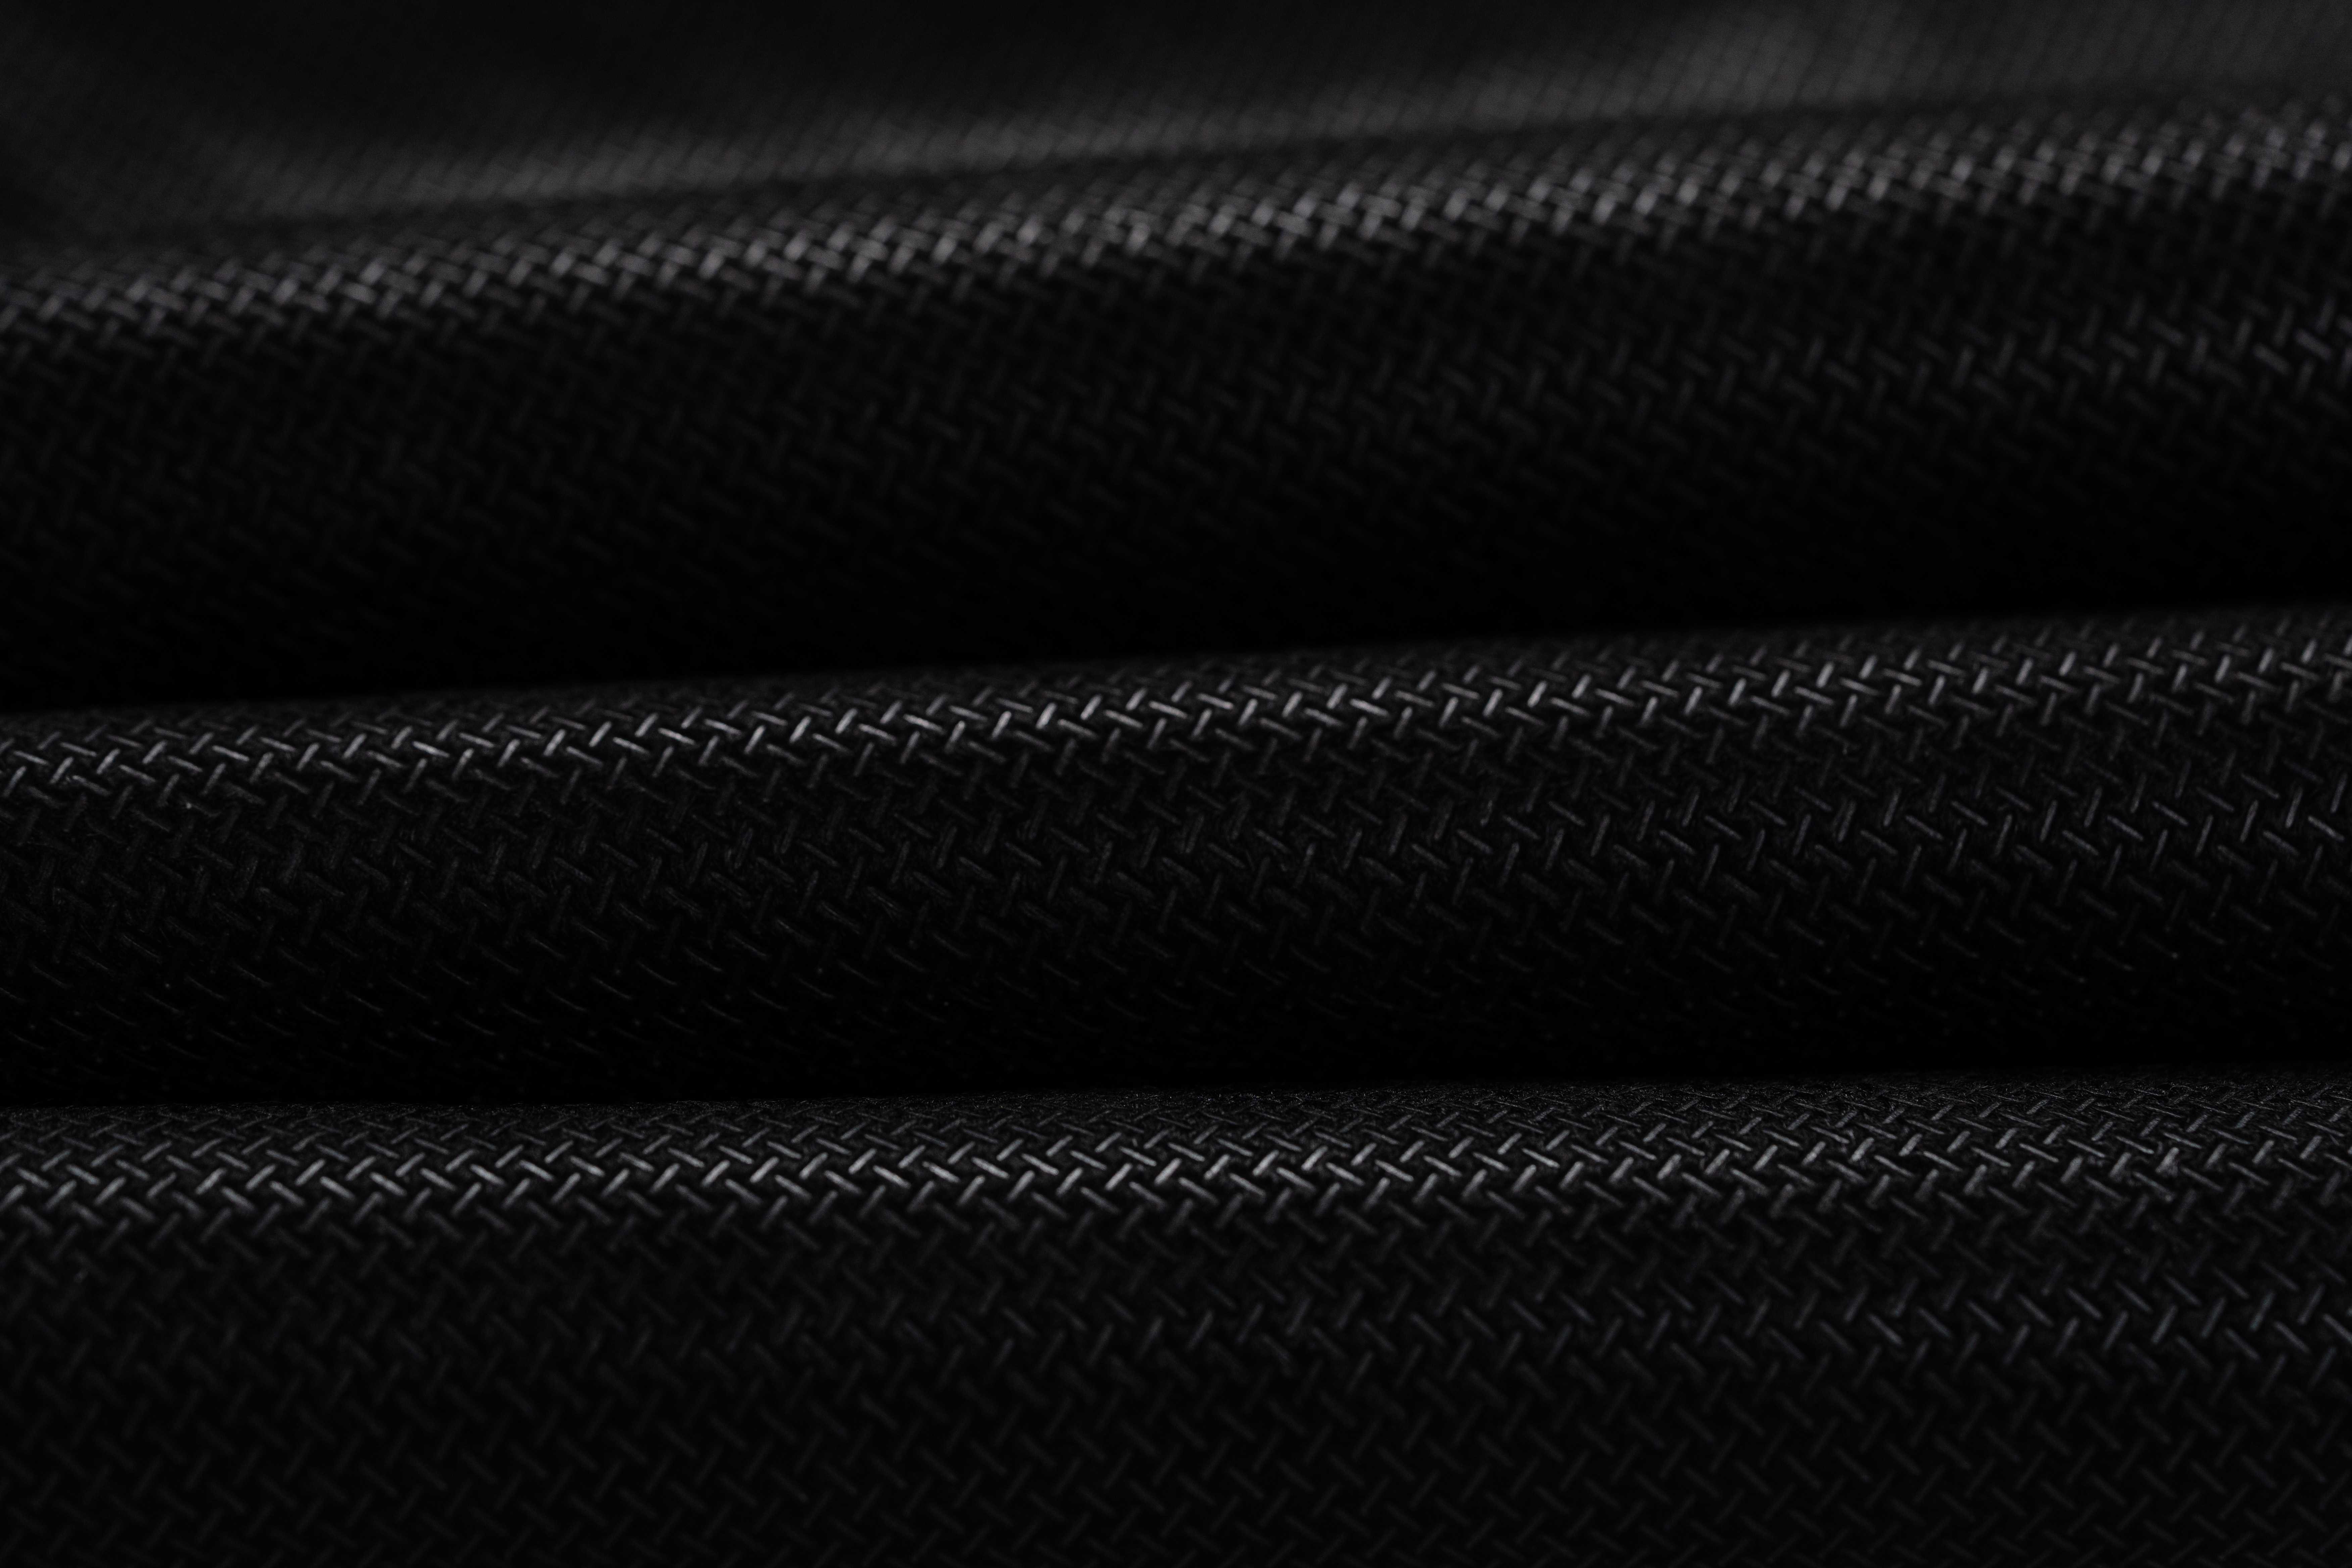 尼龍紡黏不織布 (100% Nylon Spunbond Fabric) – 車內裝用 (For Car Interior)